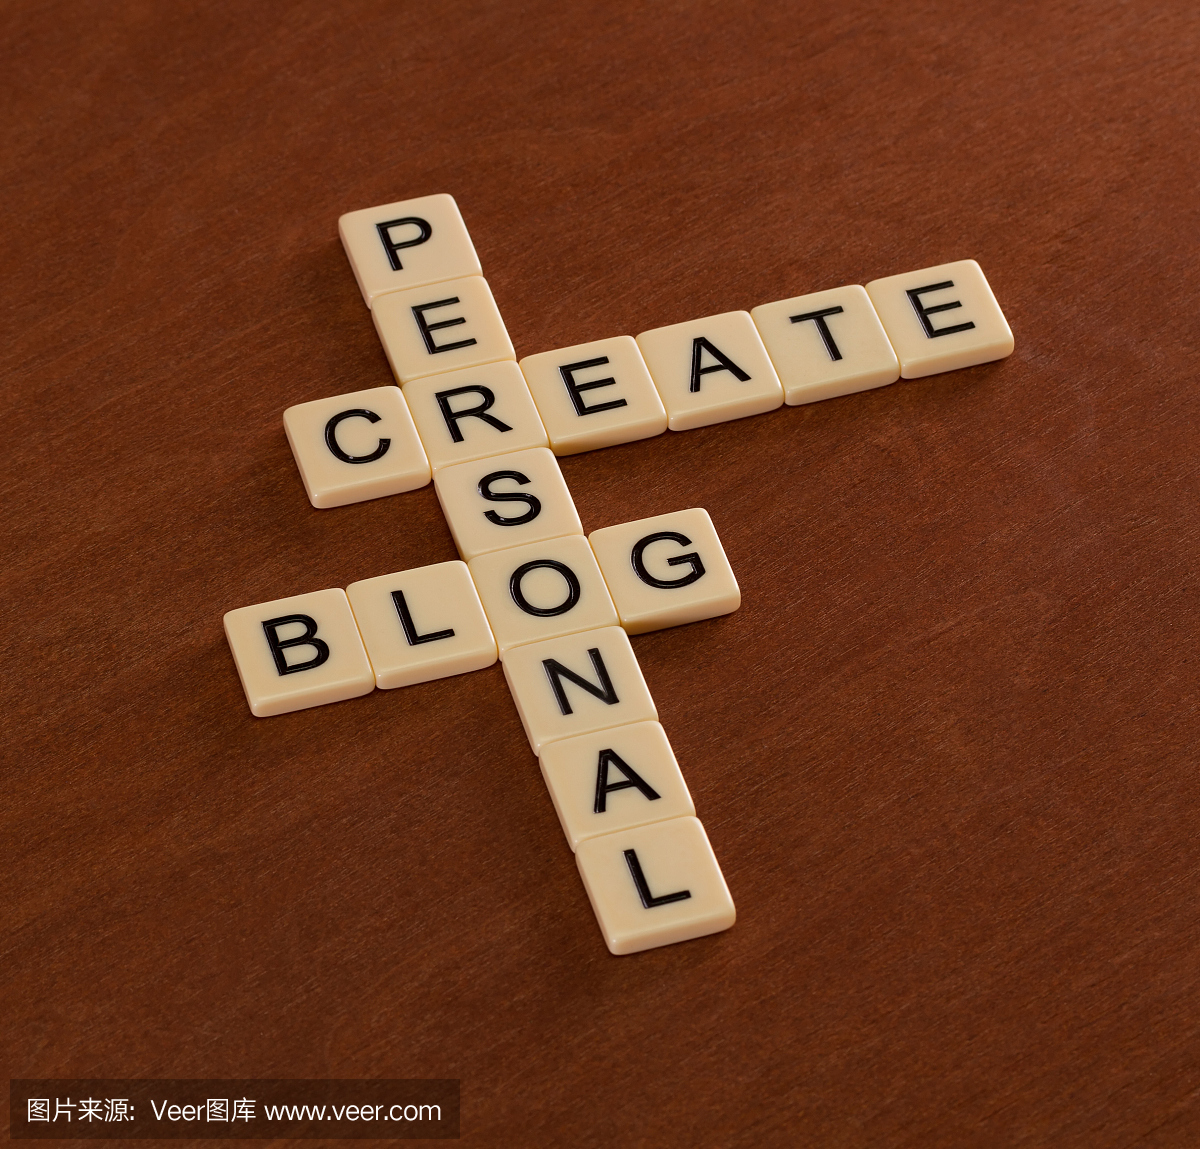 词汇拼写与词创建个人博客。